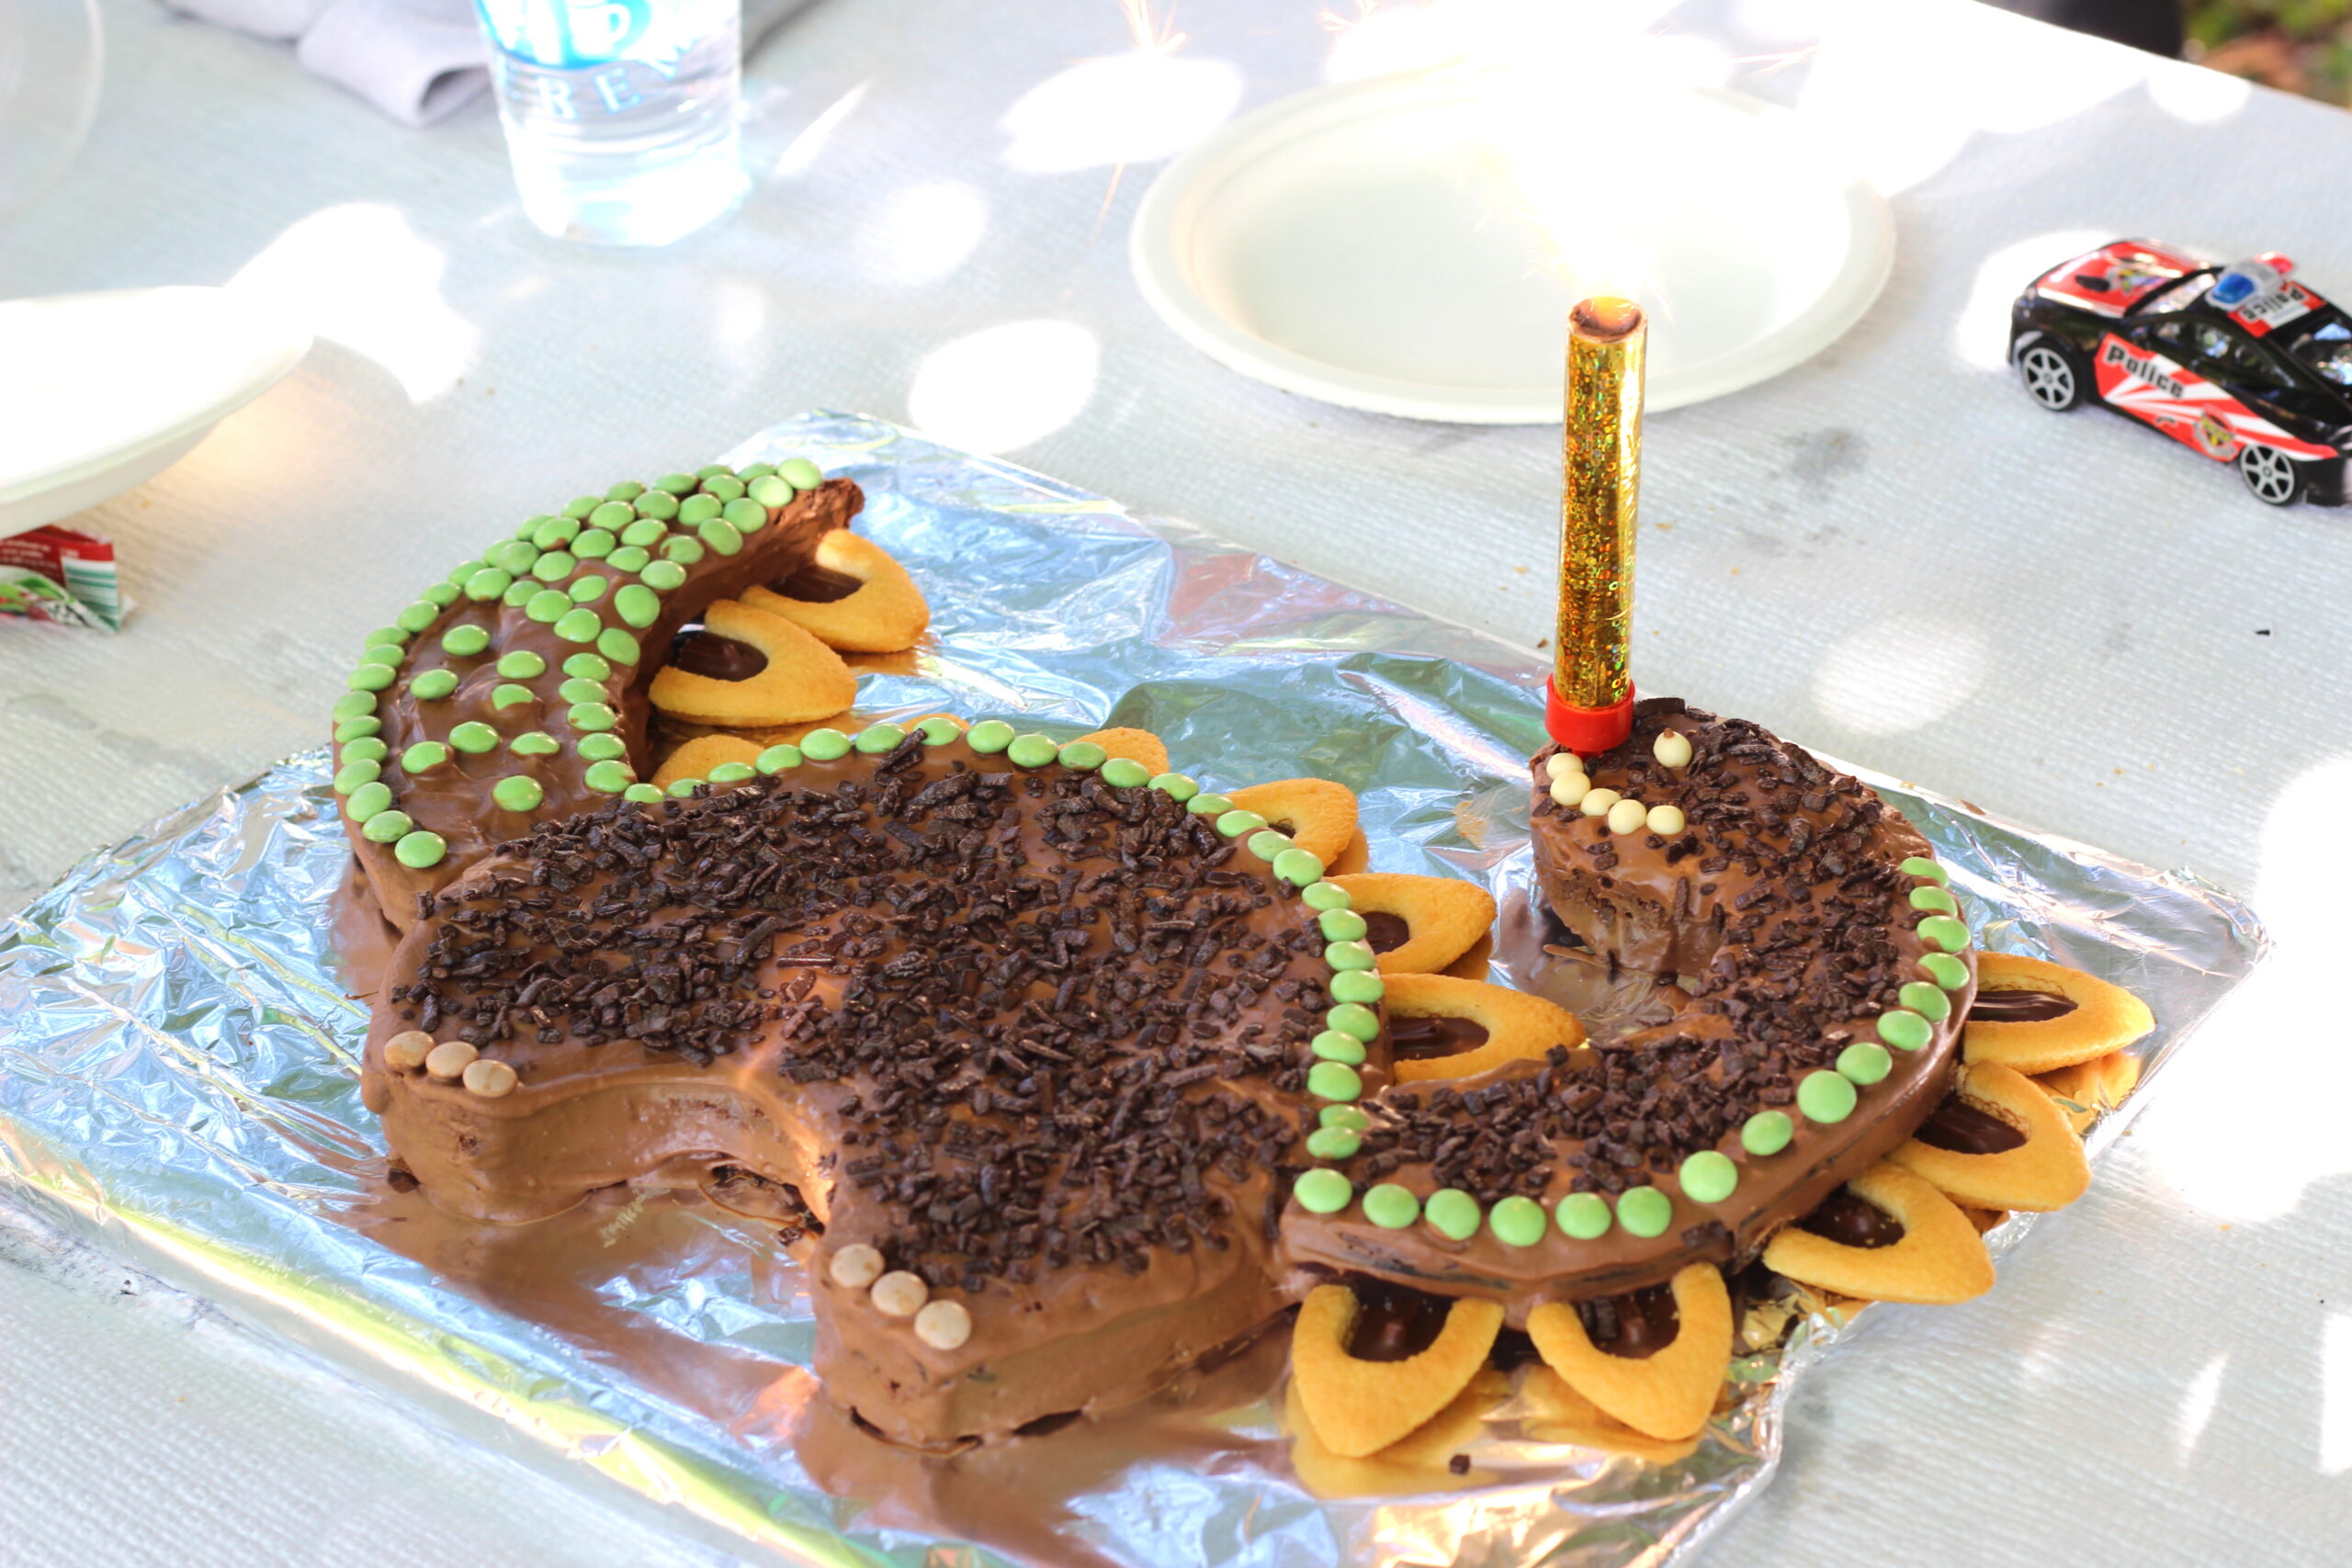 Décoration gâteau anniversaire dinosaure - Pic